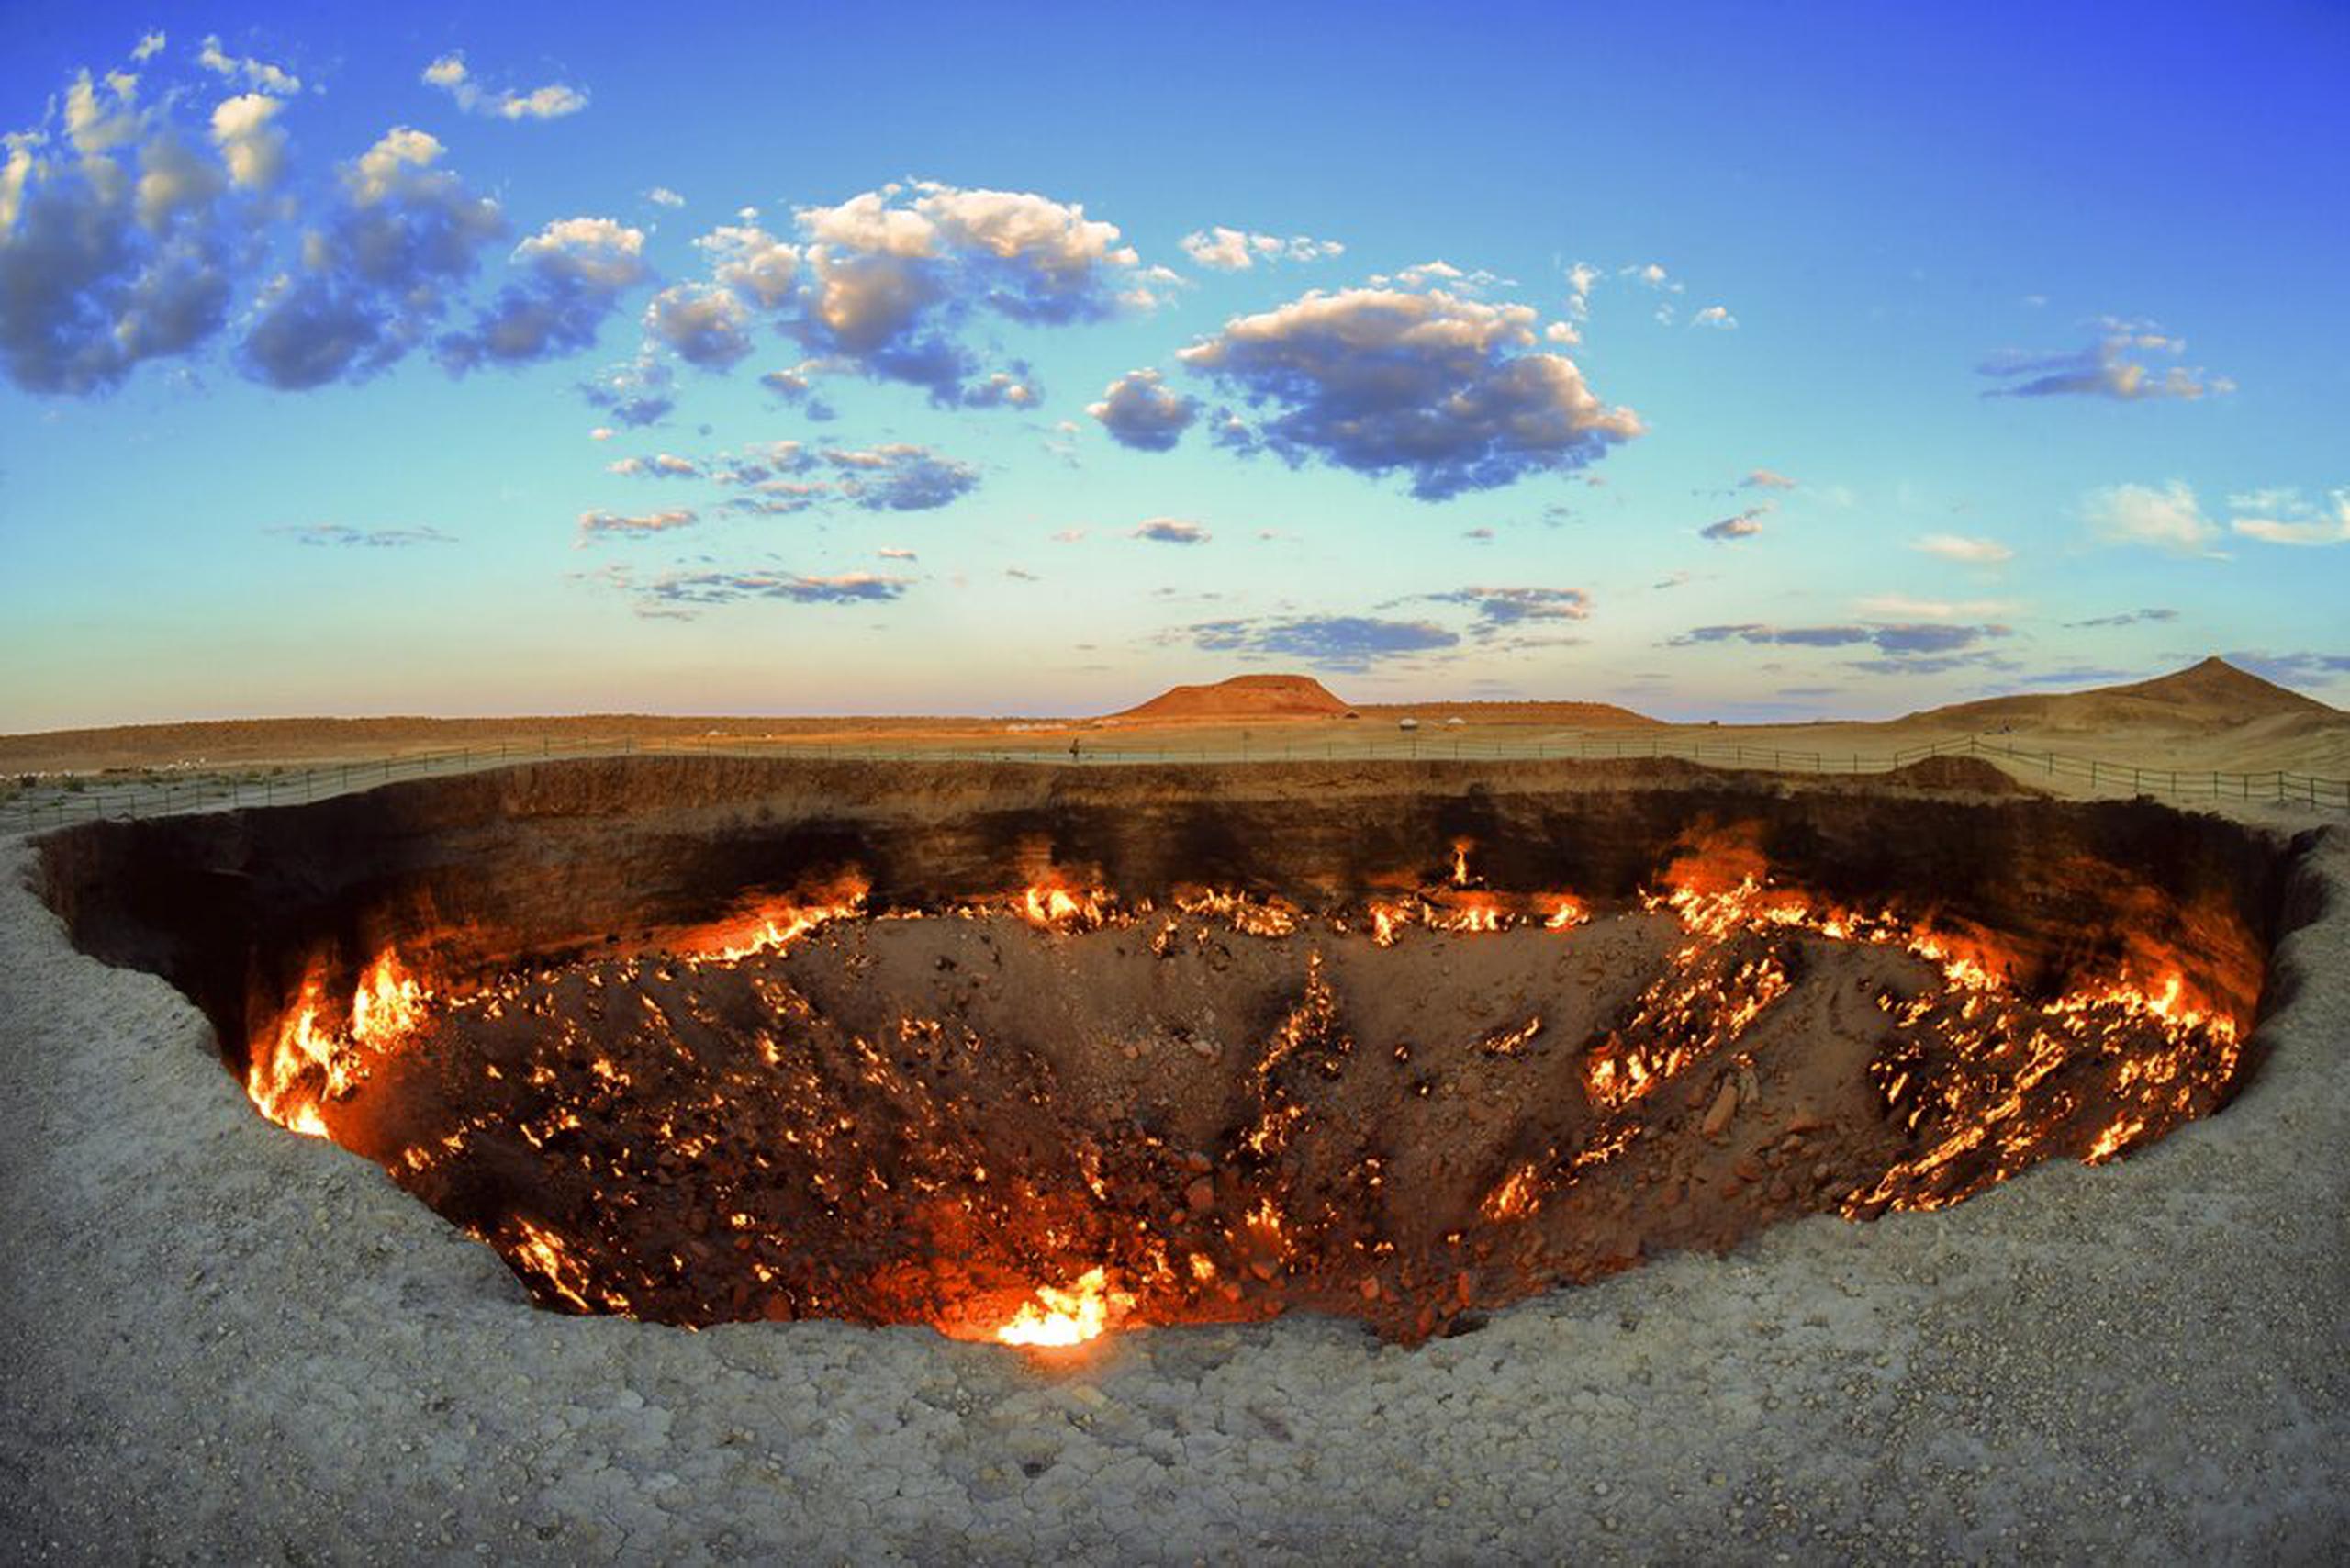 Vista del cráter llamado "Puertas del Infierno" en Darvaza, Turkmenistán.